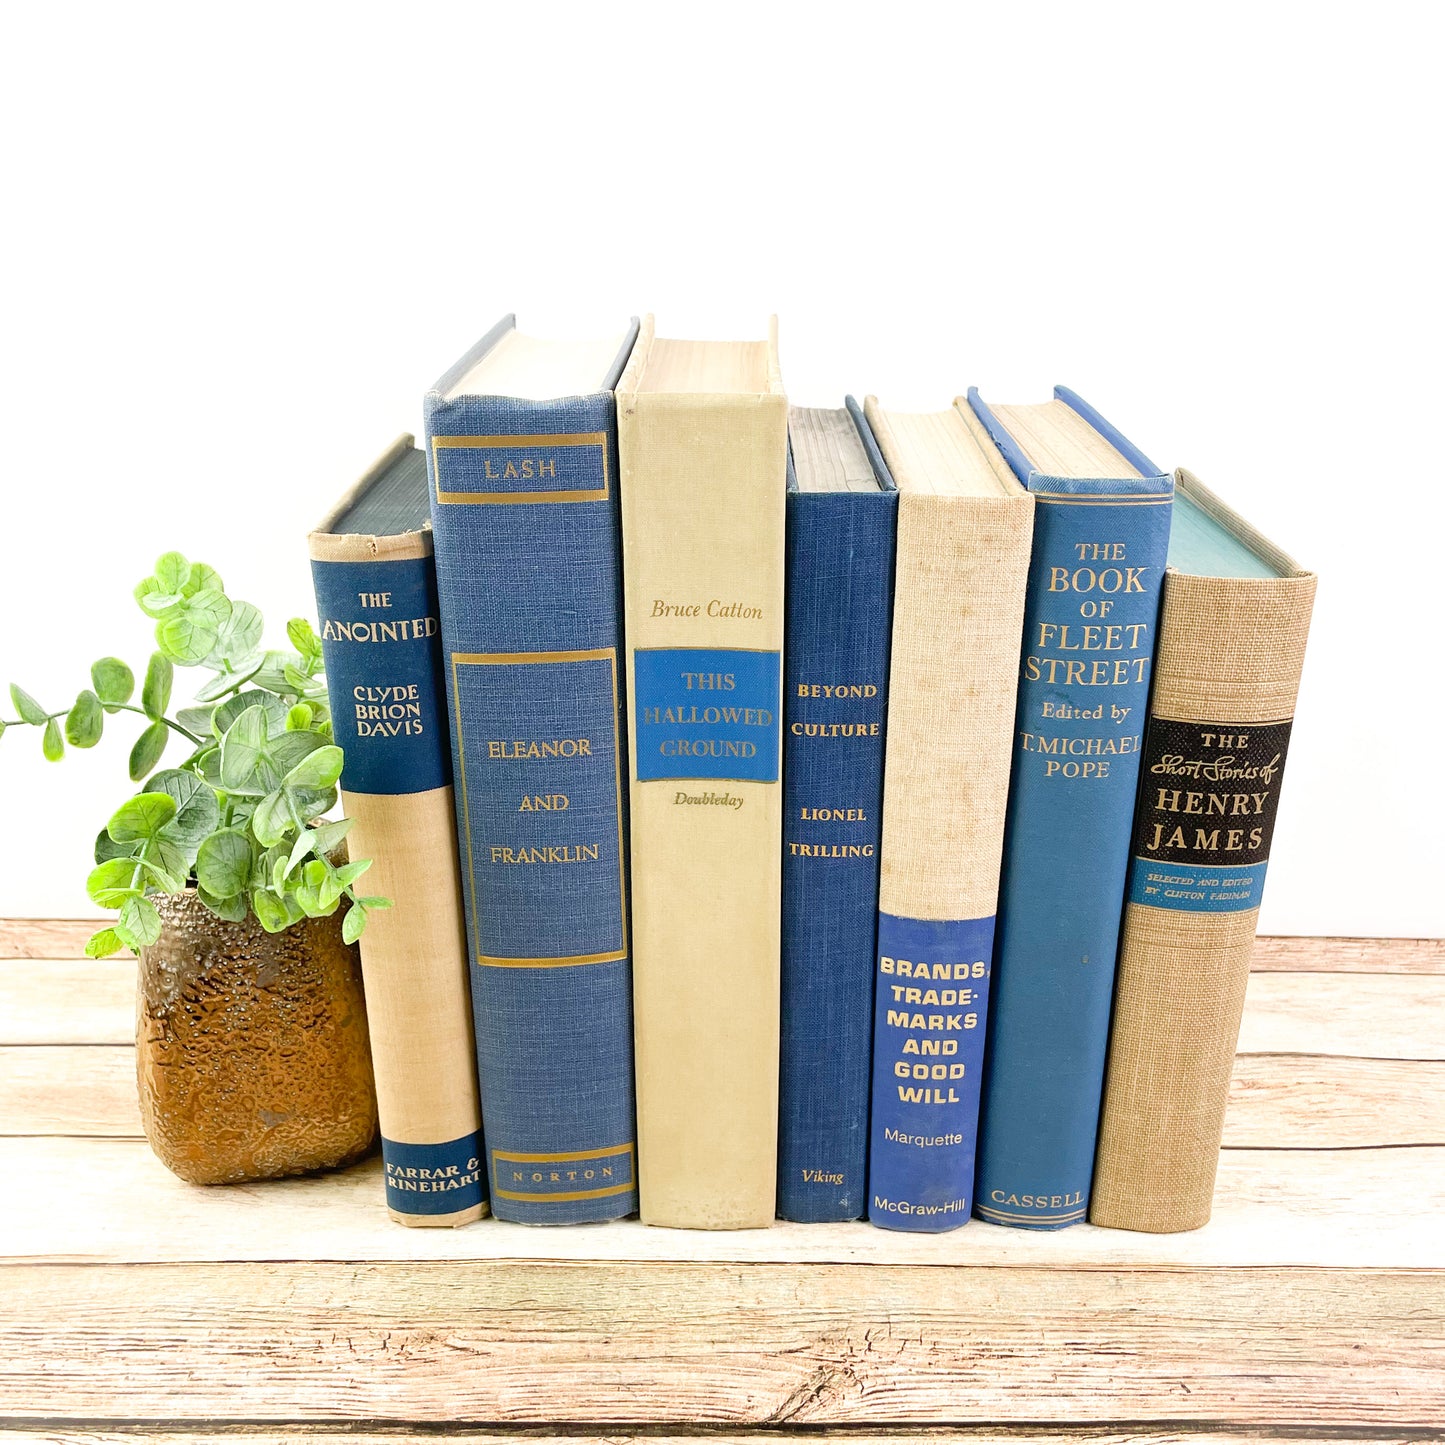 Blue and Cream Decorative Book Set for Home Decor